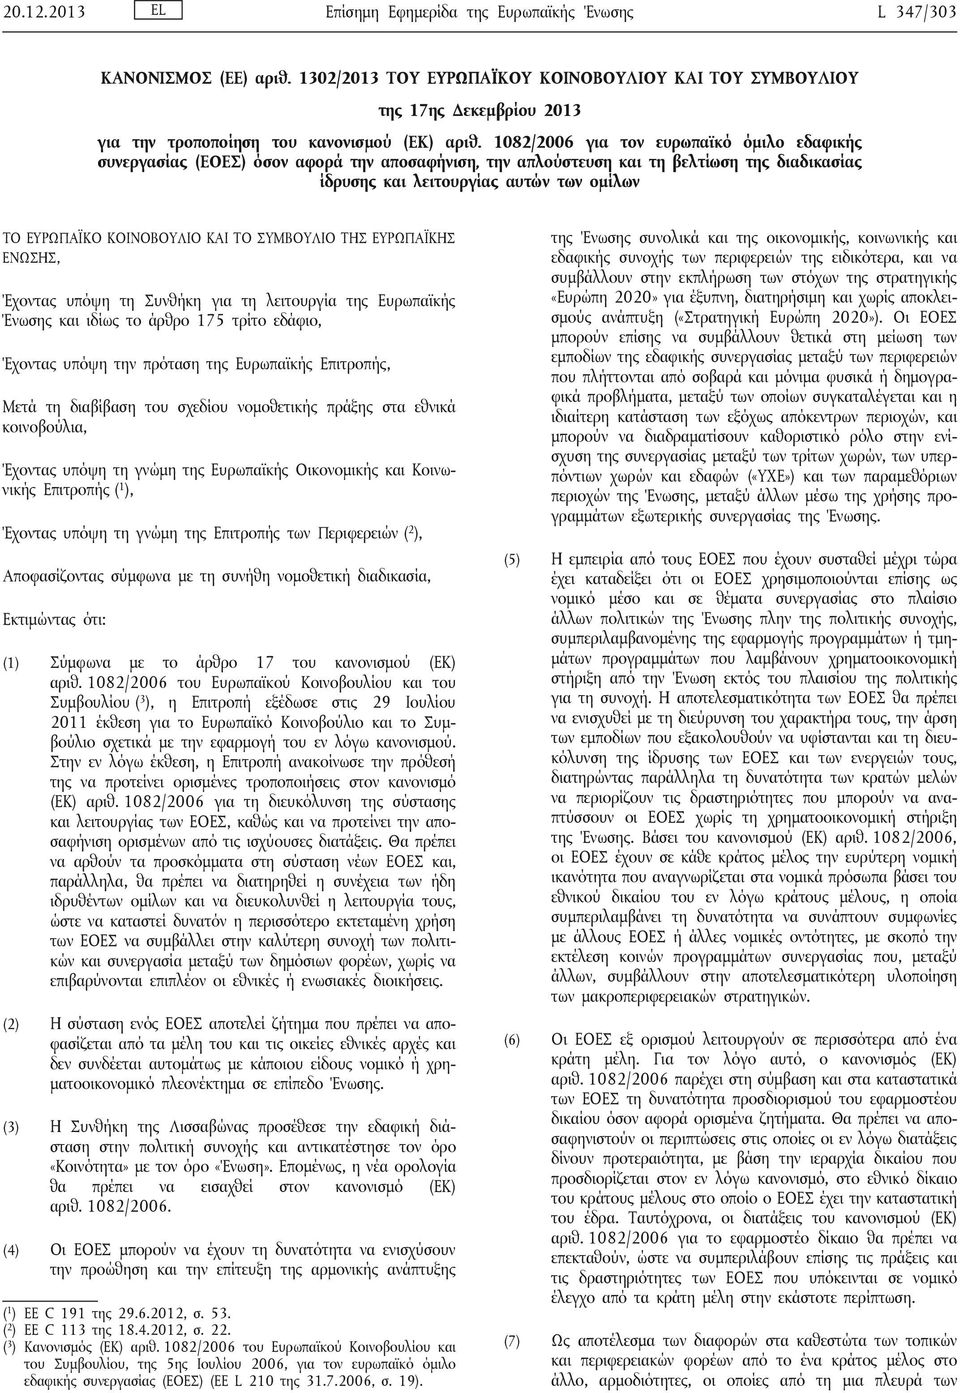 1082/2006 για τον ευρωπαϊκό όμιλο εδαφικής συνεργασίας (ΕΟΕΣ) όσον αφορά την αποσαφήνιση, την απλούστευση και τη βελτίωση της διαδικασίας ίδρυσης και λειτουργίας αυτών των ομίλων ΤΟ ΕΥΡΩΠΑΪΚΟ